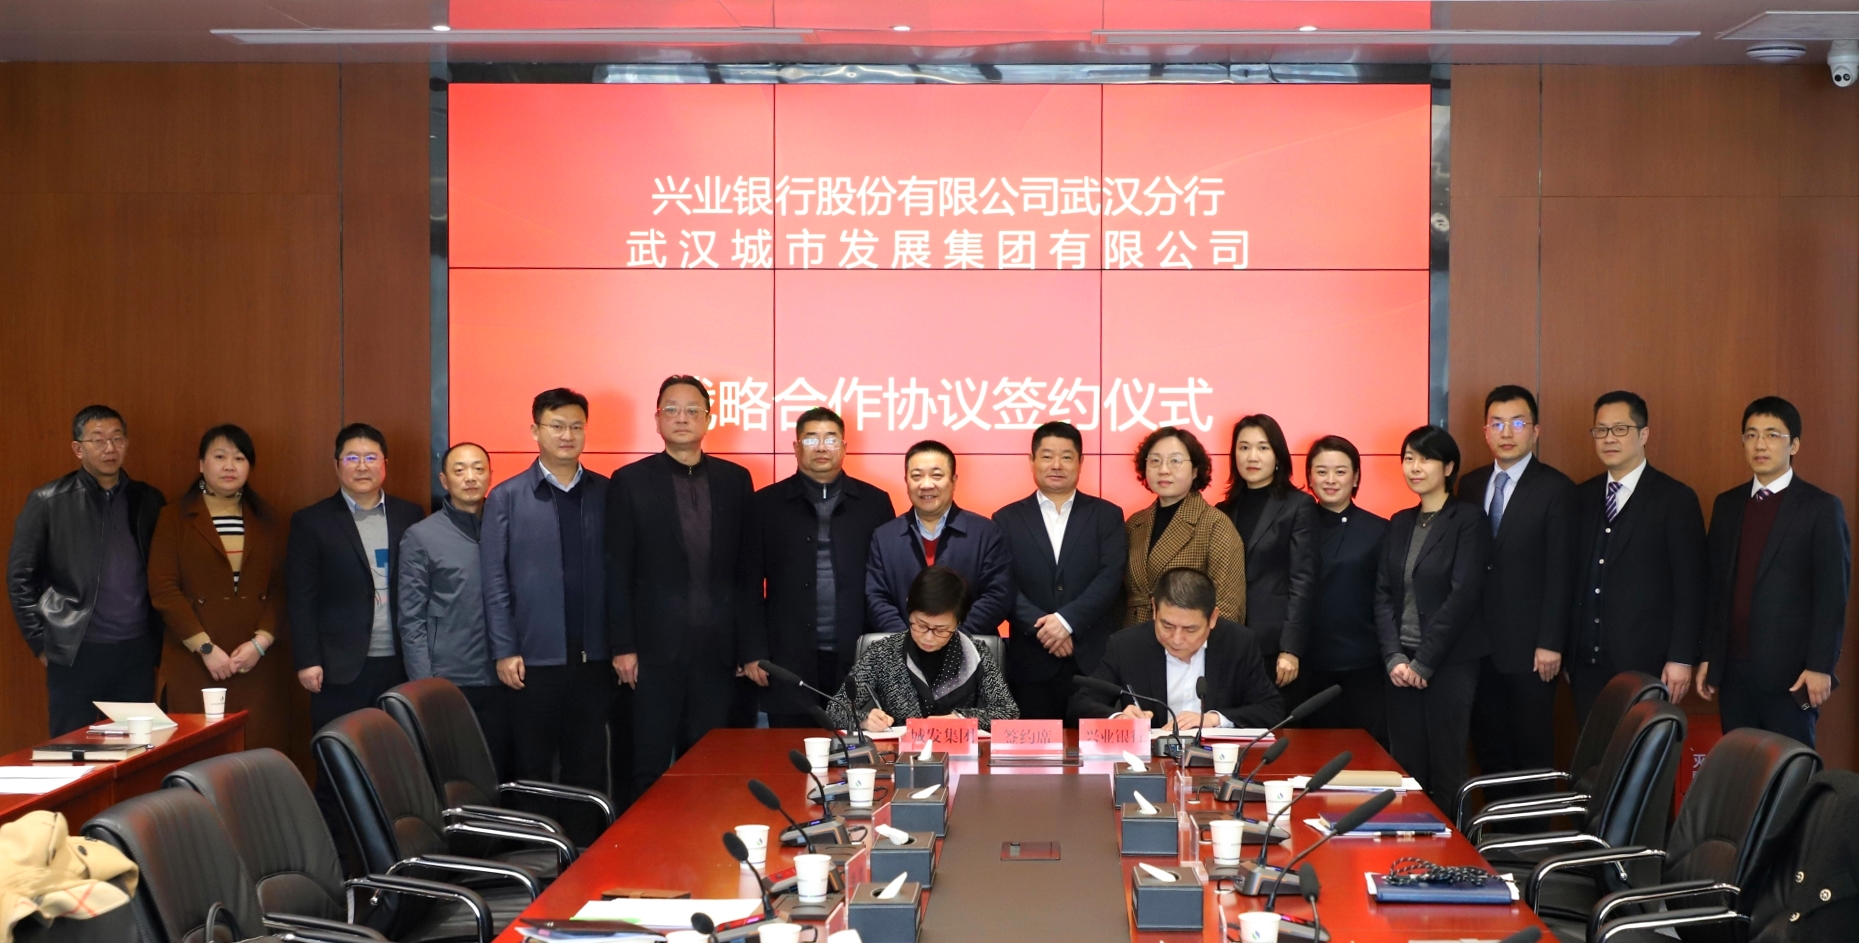 兴业银行武汉分行与武汉城发集团签署战略合作协议